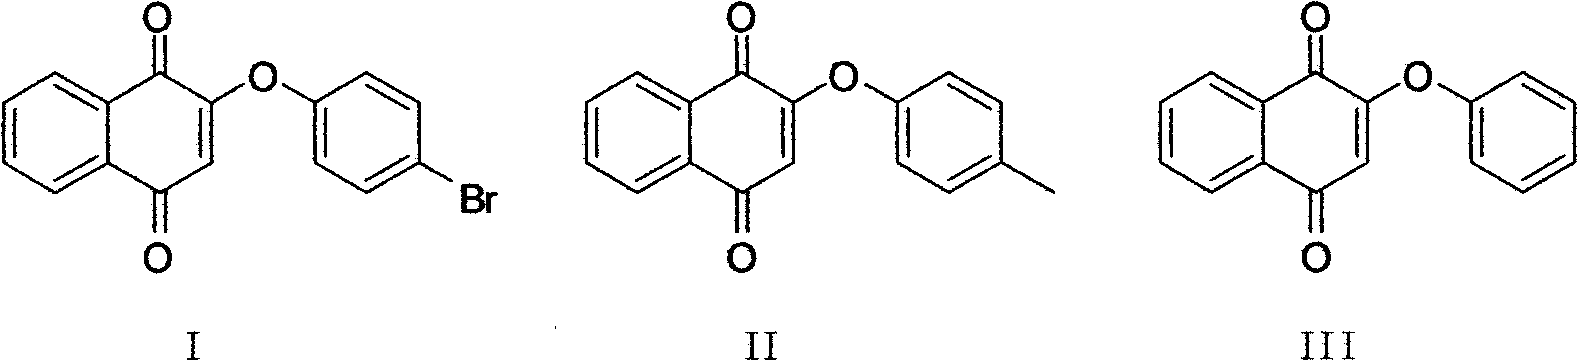 Vitamin K3 derivatives serving as IDO inhibitor